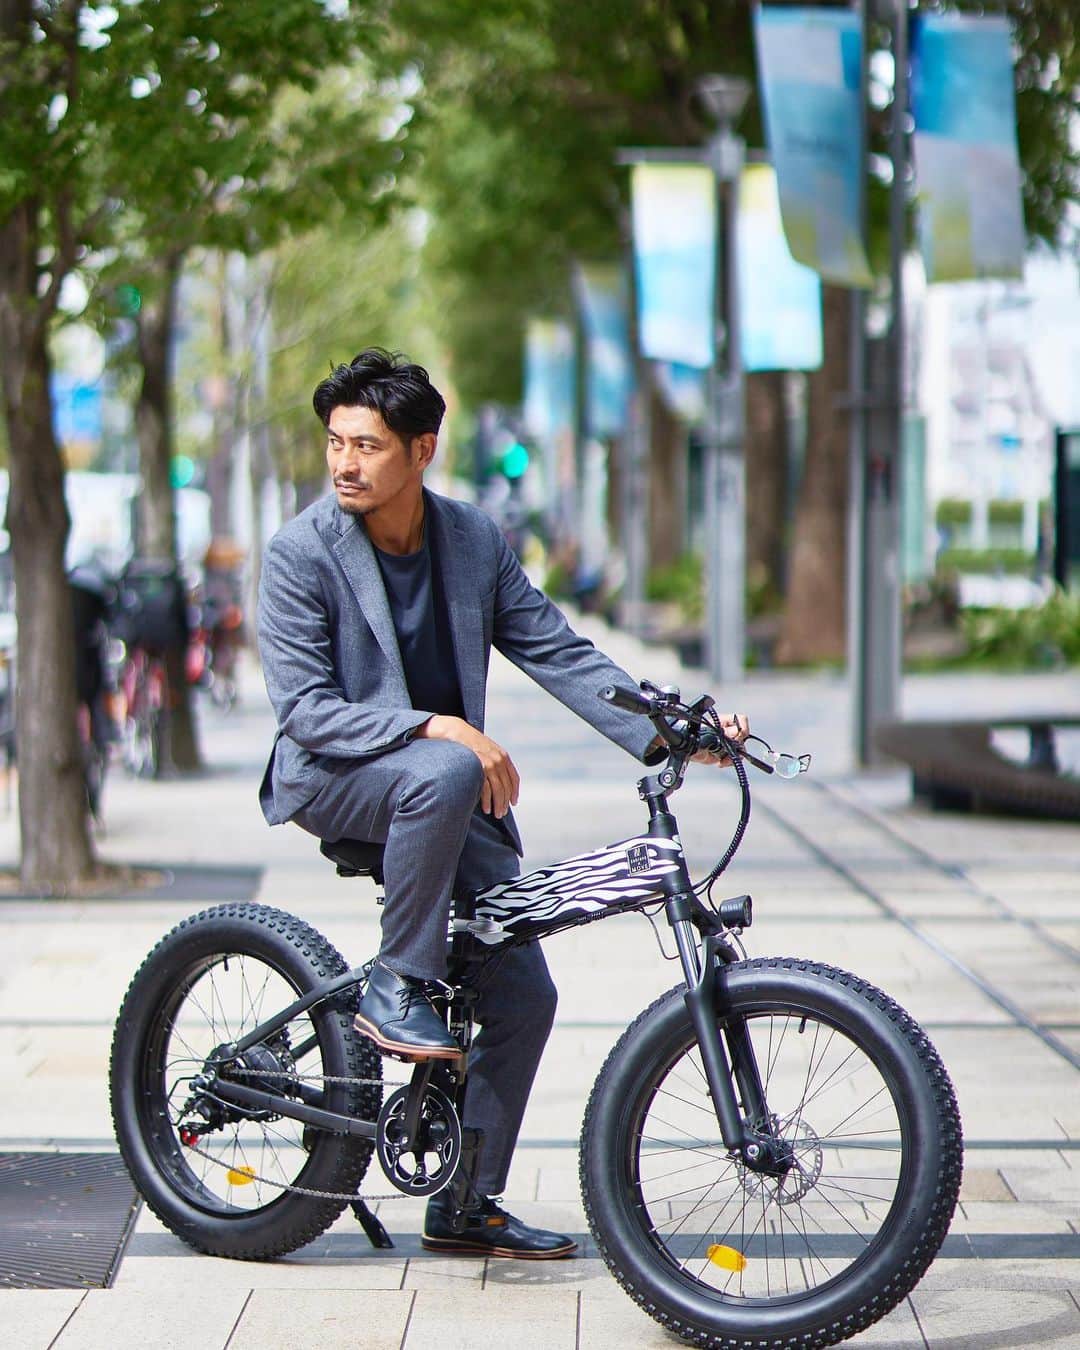 坂口憲二（THE RISING SUN COFFEE）のインスタグラム：「◆GOOD MORNING COFFEE‼︎◆  【ZEBRANG ELECTRIC BICYCLE】 "ゼブラン電動自転車"  アンバサダーを務めているゼブラン @zebrang.jp から電動自転車が発売されました！  今回ZEBRANGからリリースされた電動自転車は、一目見て洗練されたデザインに魅了されます。美しい曲線やカラーリングは、どんなファッションにもマッチし自分を引き立ててくれそう。性能も一流で、スムーズな乗り心地を提供しどんな路地や坂道でも楽に駆け上がることができます。  かっこいい自転車でお気に入りのカフェや、コーヒーアウトサイドスポットを探してみてください。  【WE ARE OPEN】  3連休も各店舗、皆さまのご来店をお待ちしてます！  都内店舗 10:00〜17:00(無休)  大網店舗 11:00〜18:00(月火水木金) 　　　　10:00〜18:00(土日祝)  鶴見店舗 10:00〜18:00(無休)  therisingsuncoffee.com  #coffee #coffeebeans  #coffeeroaster  #coffeelab  #coffeeandsurfing  #coffeetime  #coffeelover  #coffeebreak  #coffeeshop  #coffeestand  #coffeeholic  #coffeehouse  #coffee_inst  #coffeemaker  #coffeeshops  #coffeecoffeecoffee  #coffeenclothes  #coffeeaddict  #coffeeculture  #coffeemorning  #coffeemag #specialitycoffee  #zebrang #electricbicycle  #TRSC」